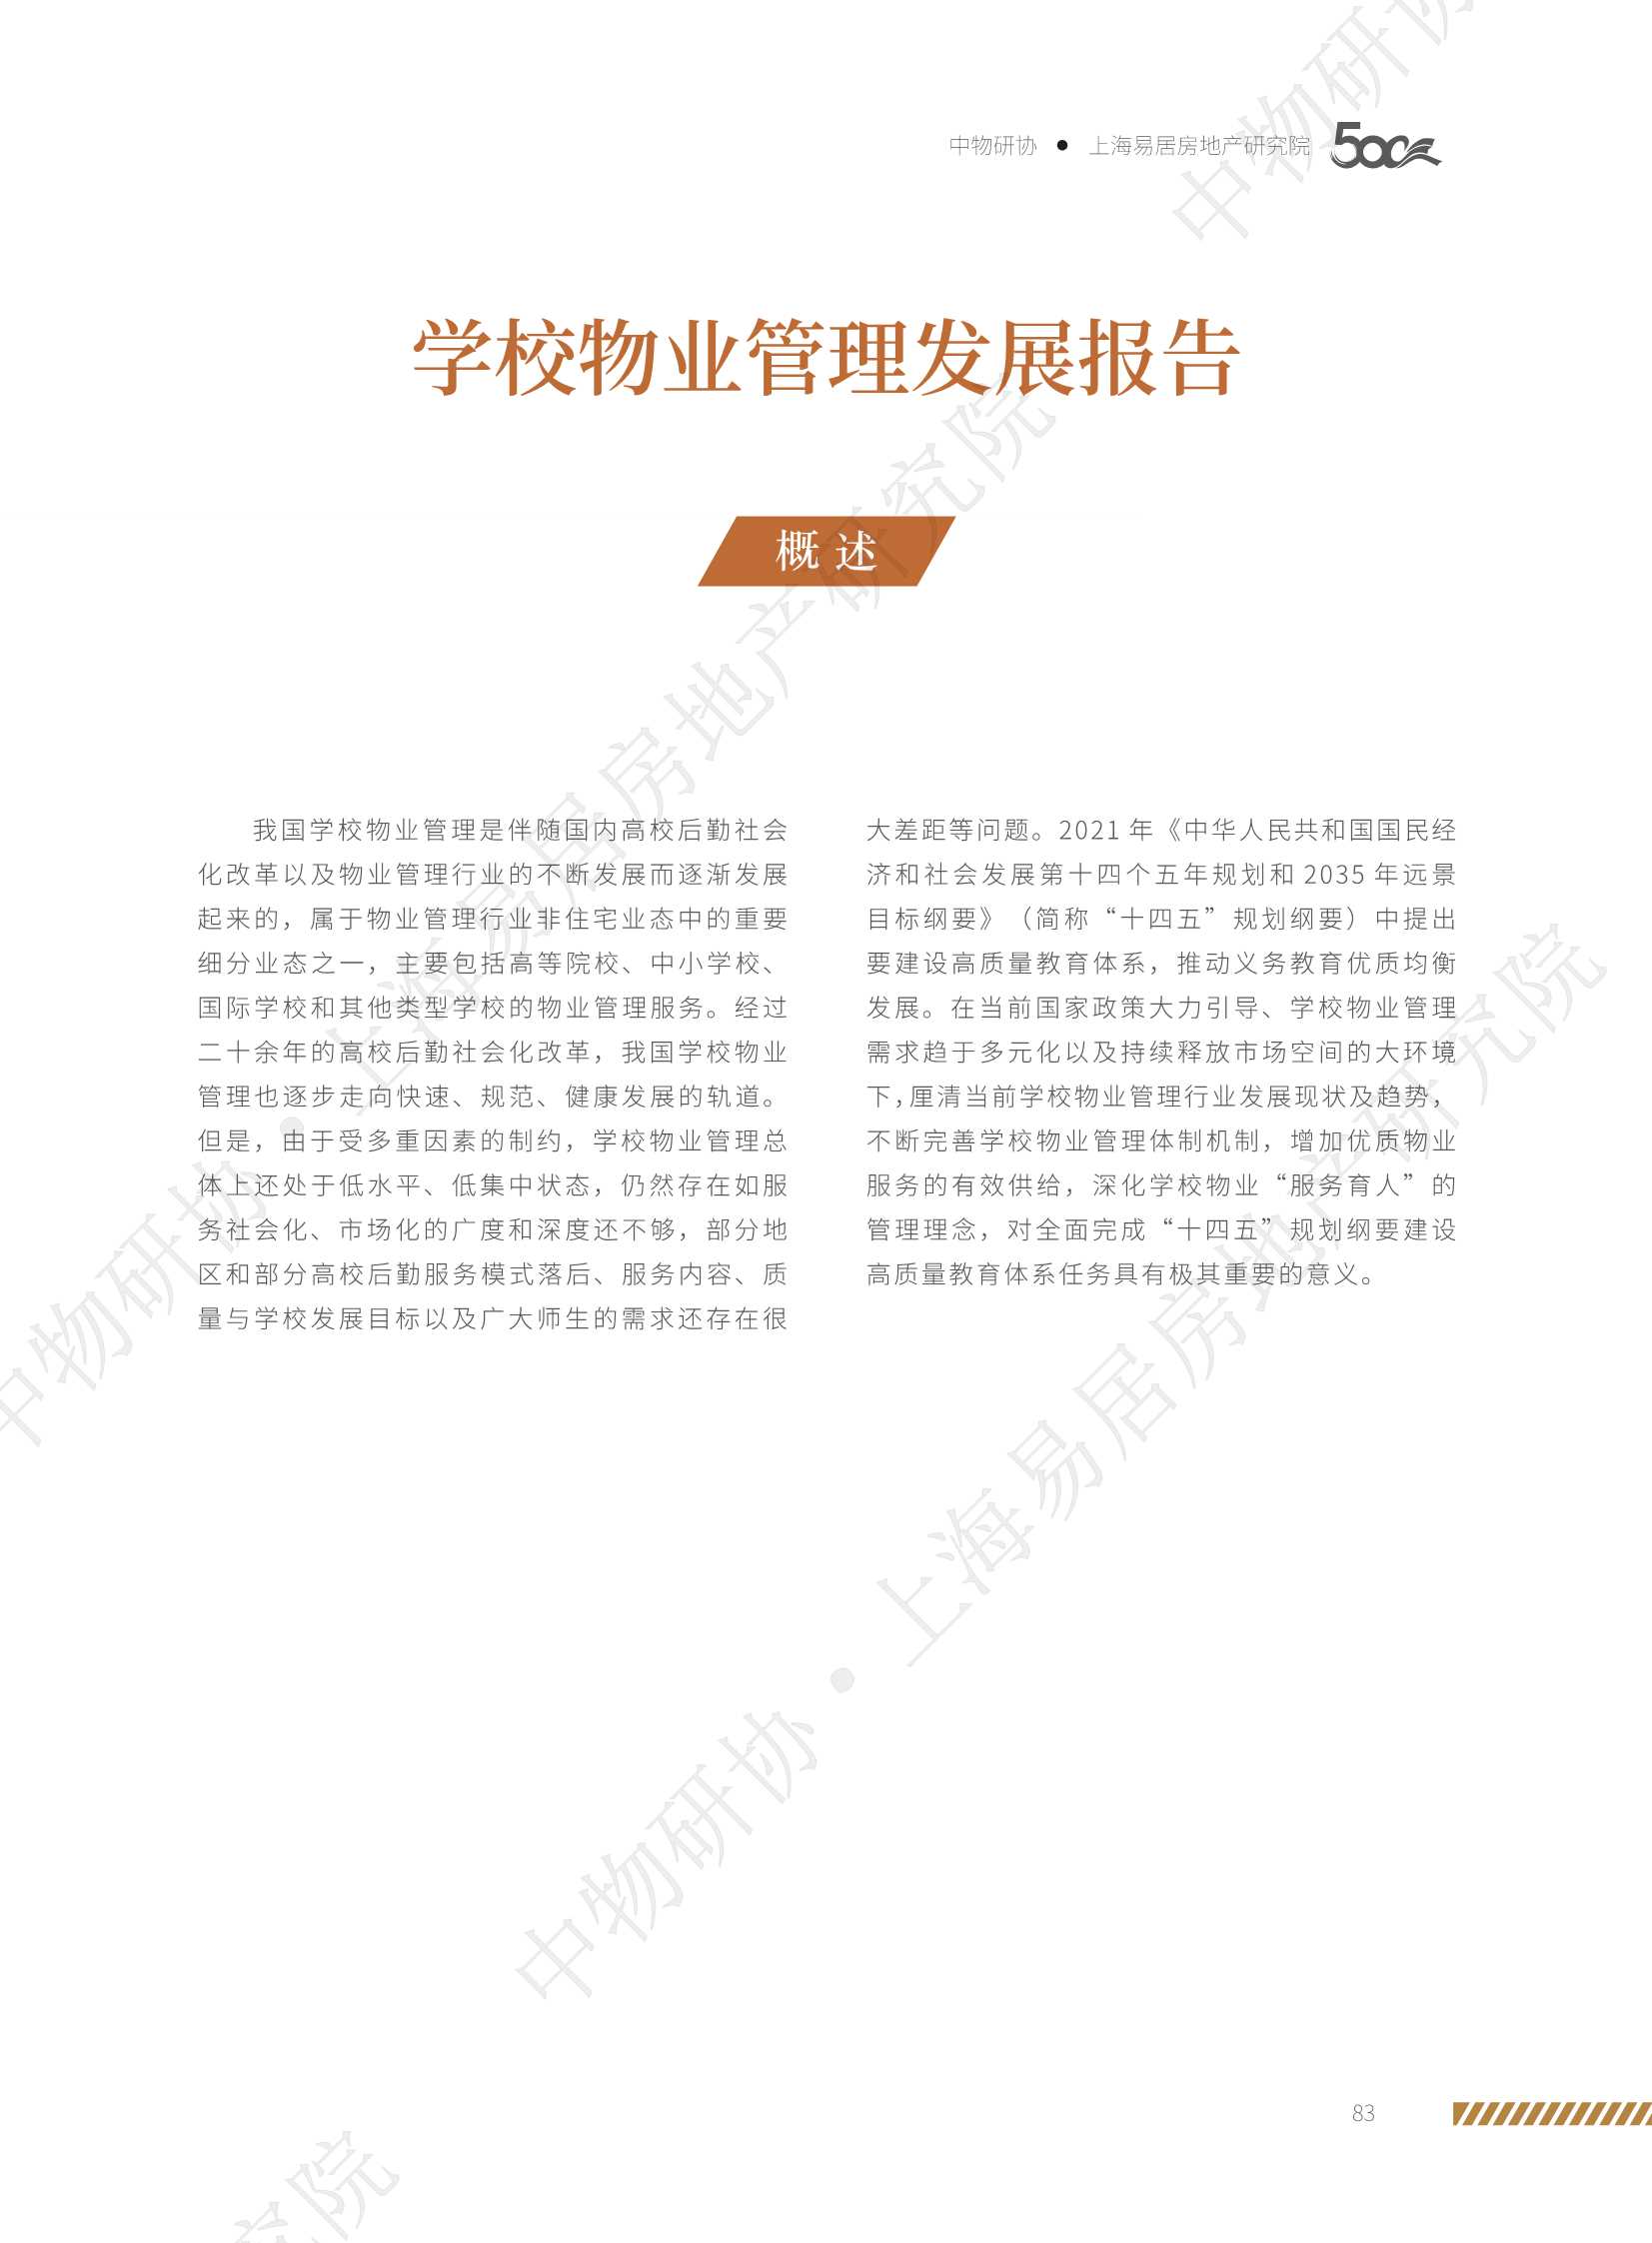 中物研协&上海易居房地产研究院-2021学校物业管理发展报告-2021.10-20页